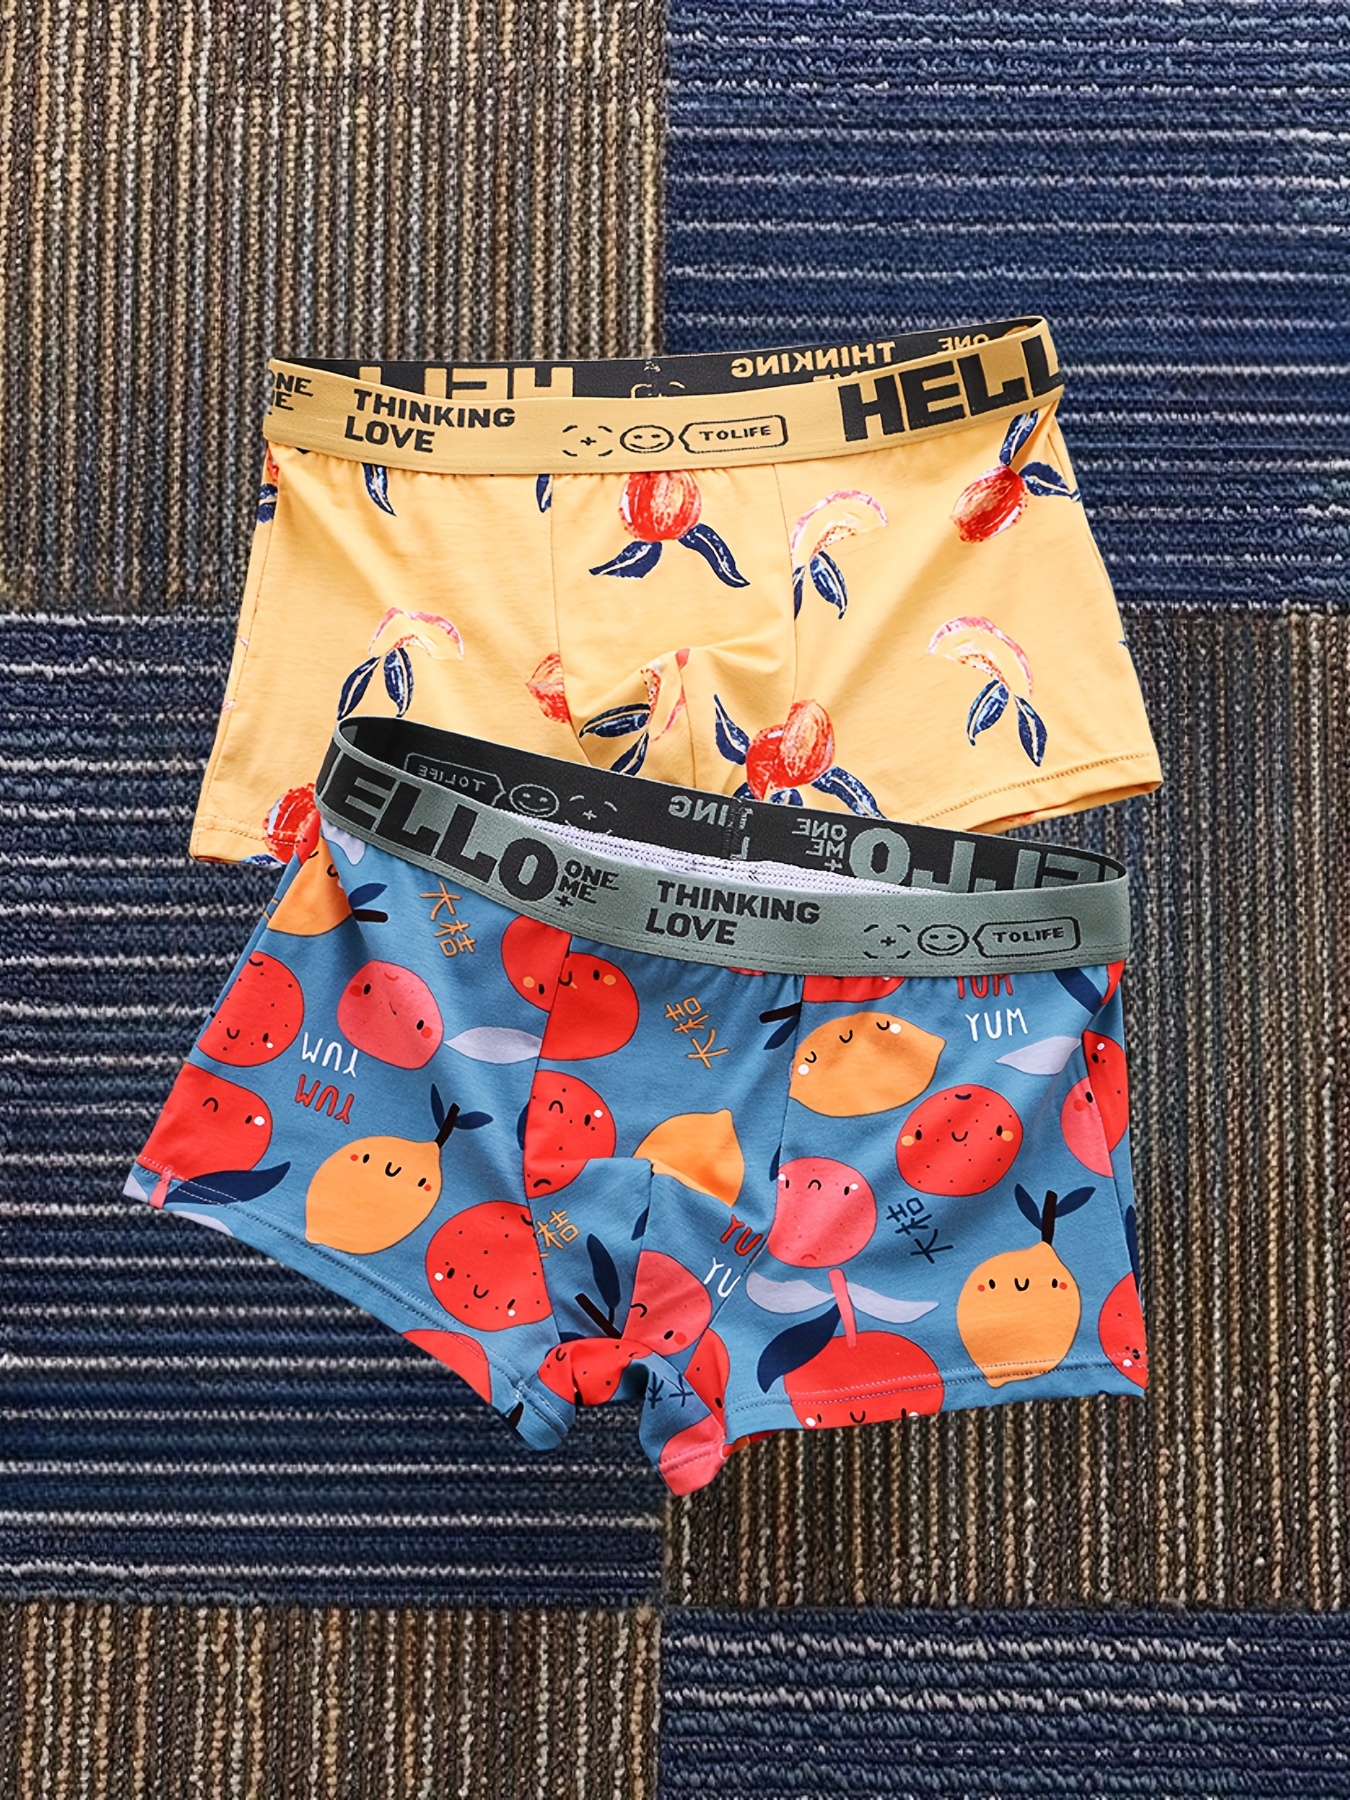 1 set = 2pcs) Free shipping cotton Ladies' Panties + Men's Boxer